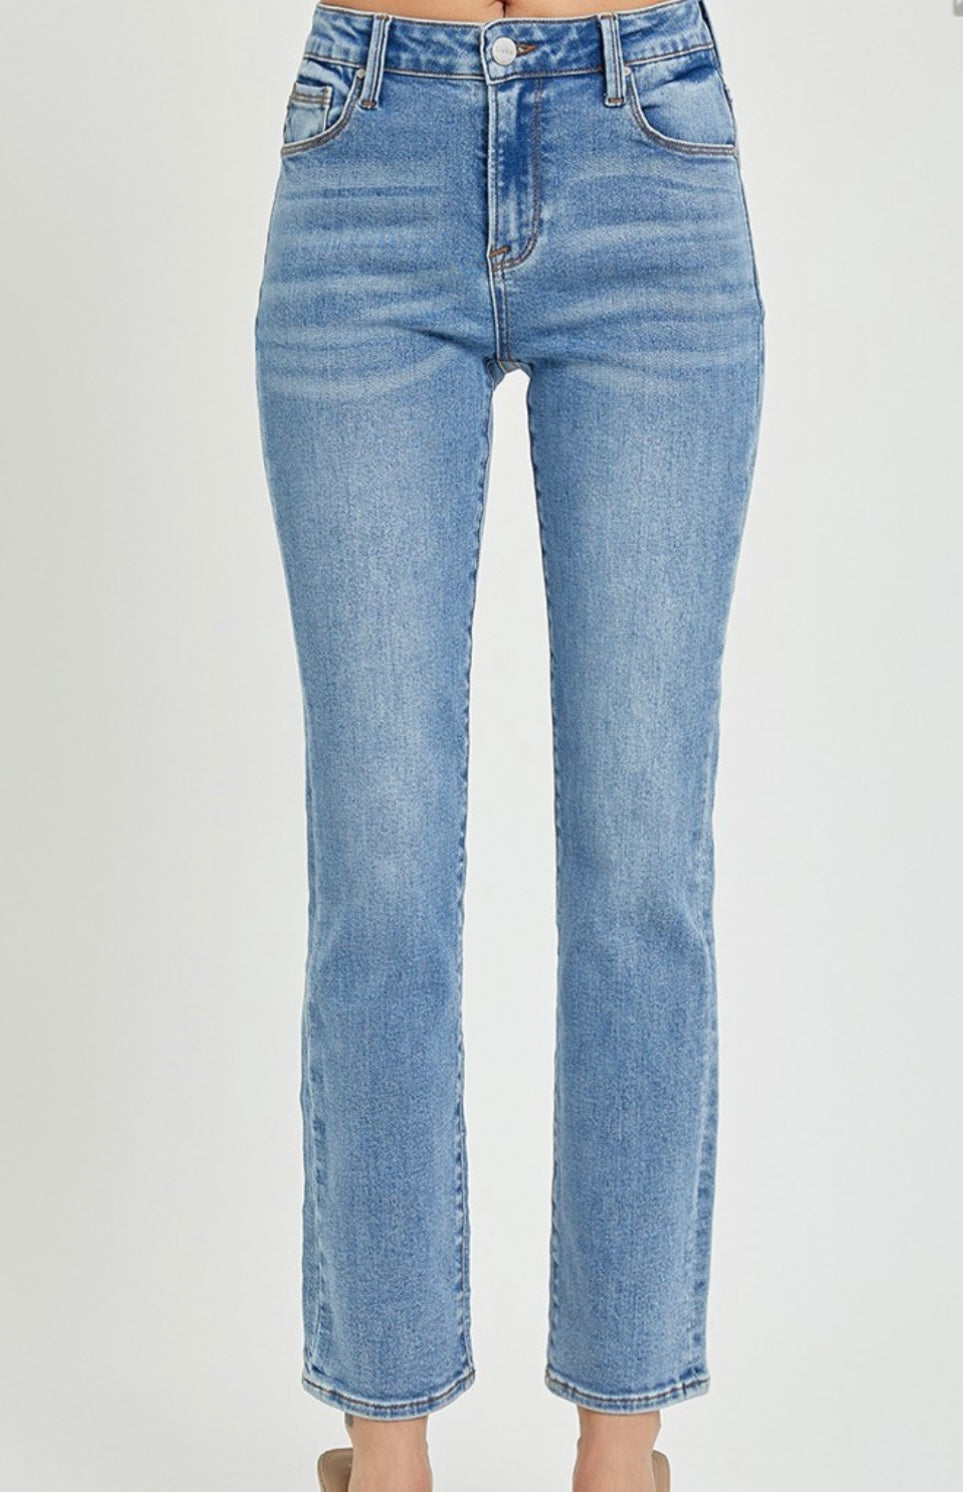 Spencer Jeans